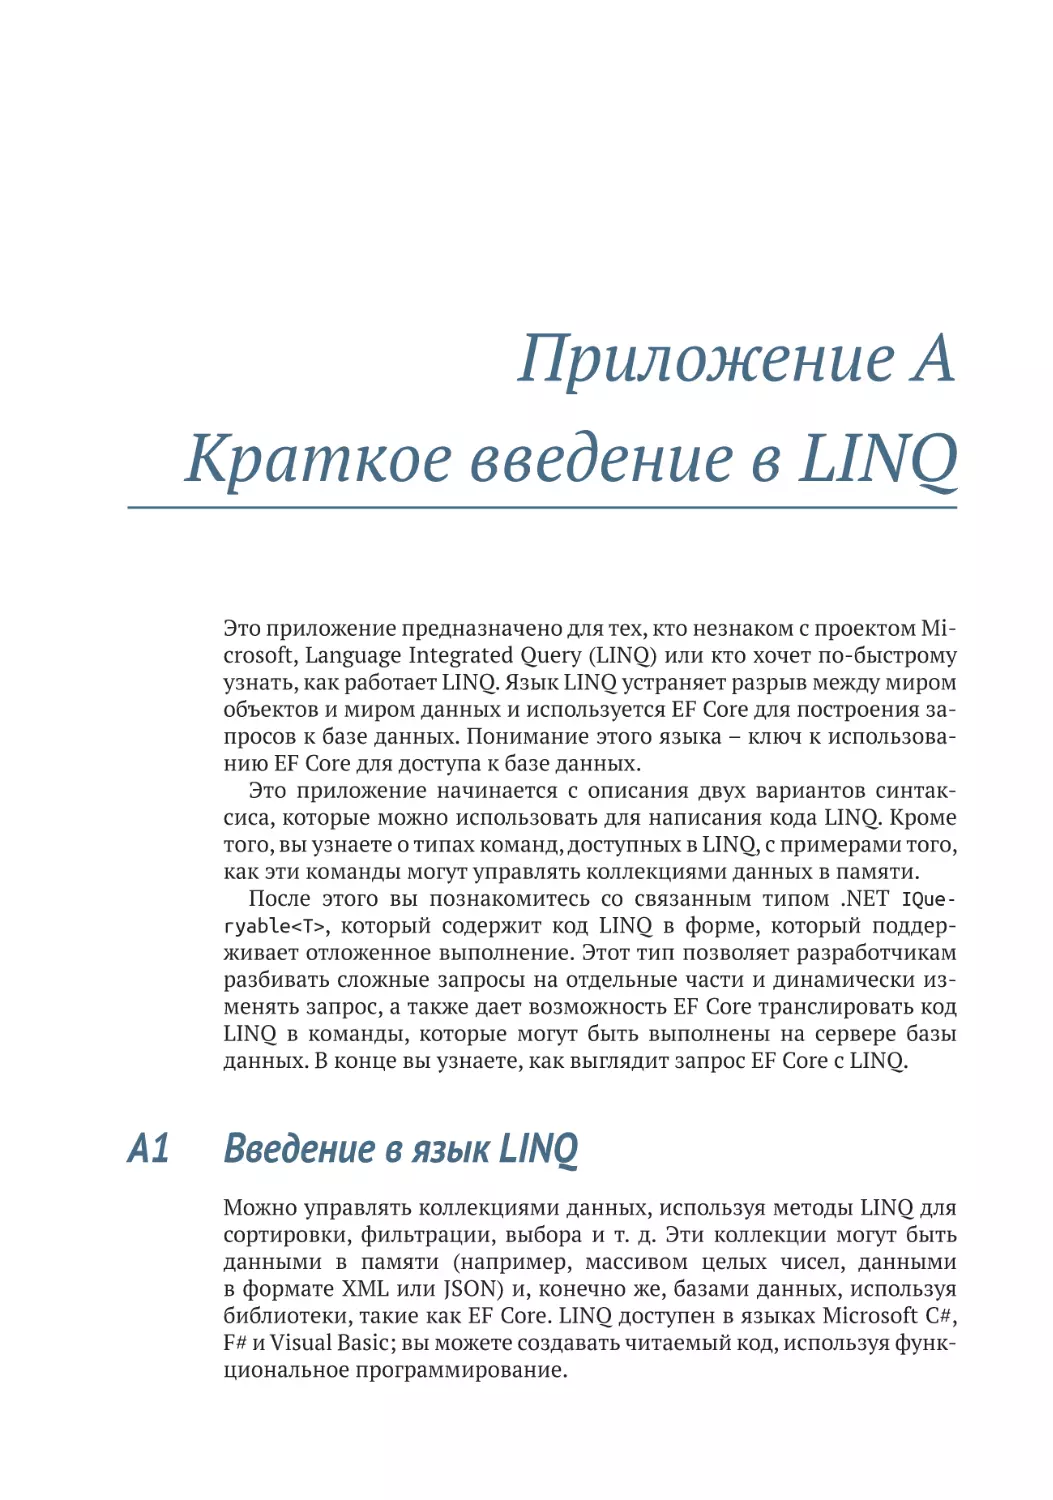 Приложение A. Краткое введение в LINQ